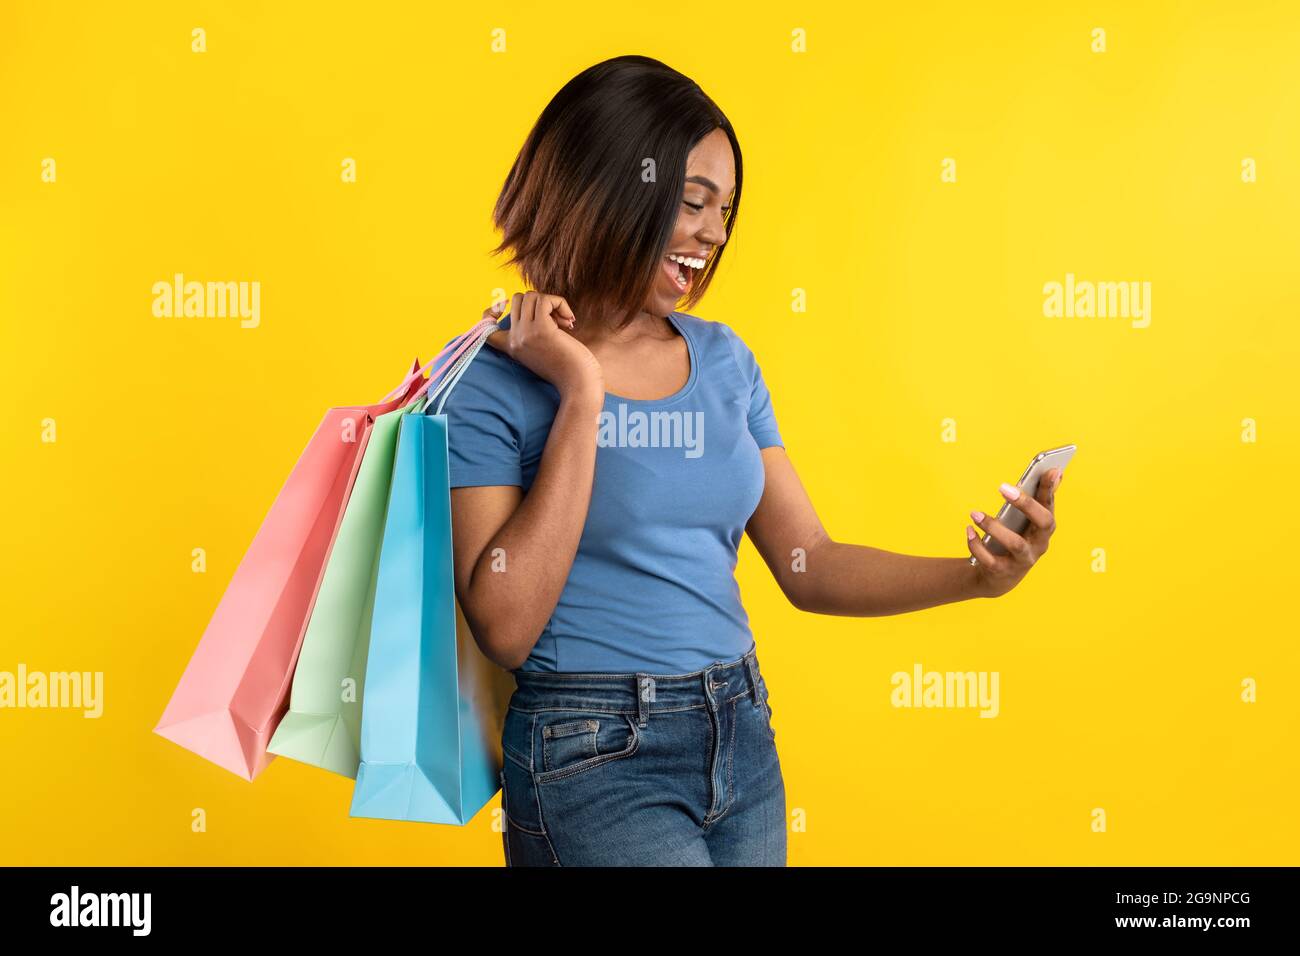 Femme africaine avec smartphone et sacs de shopping posant, fond jaune Banque D'Images